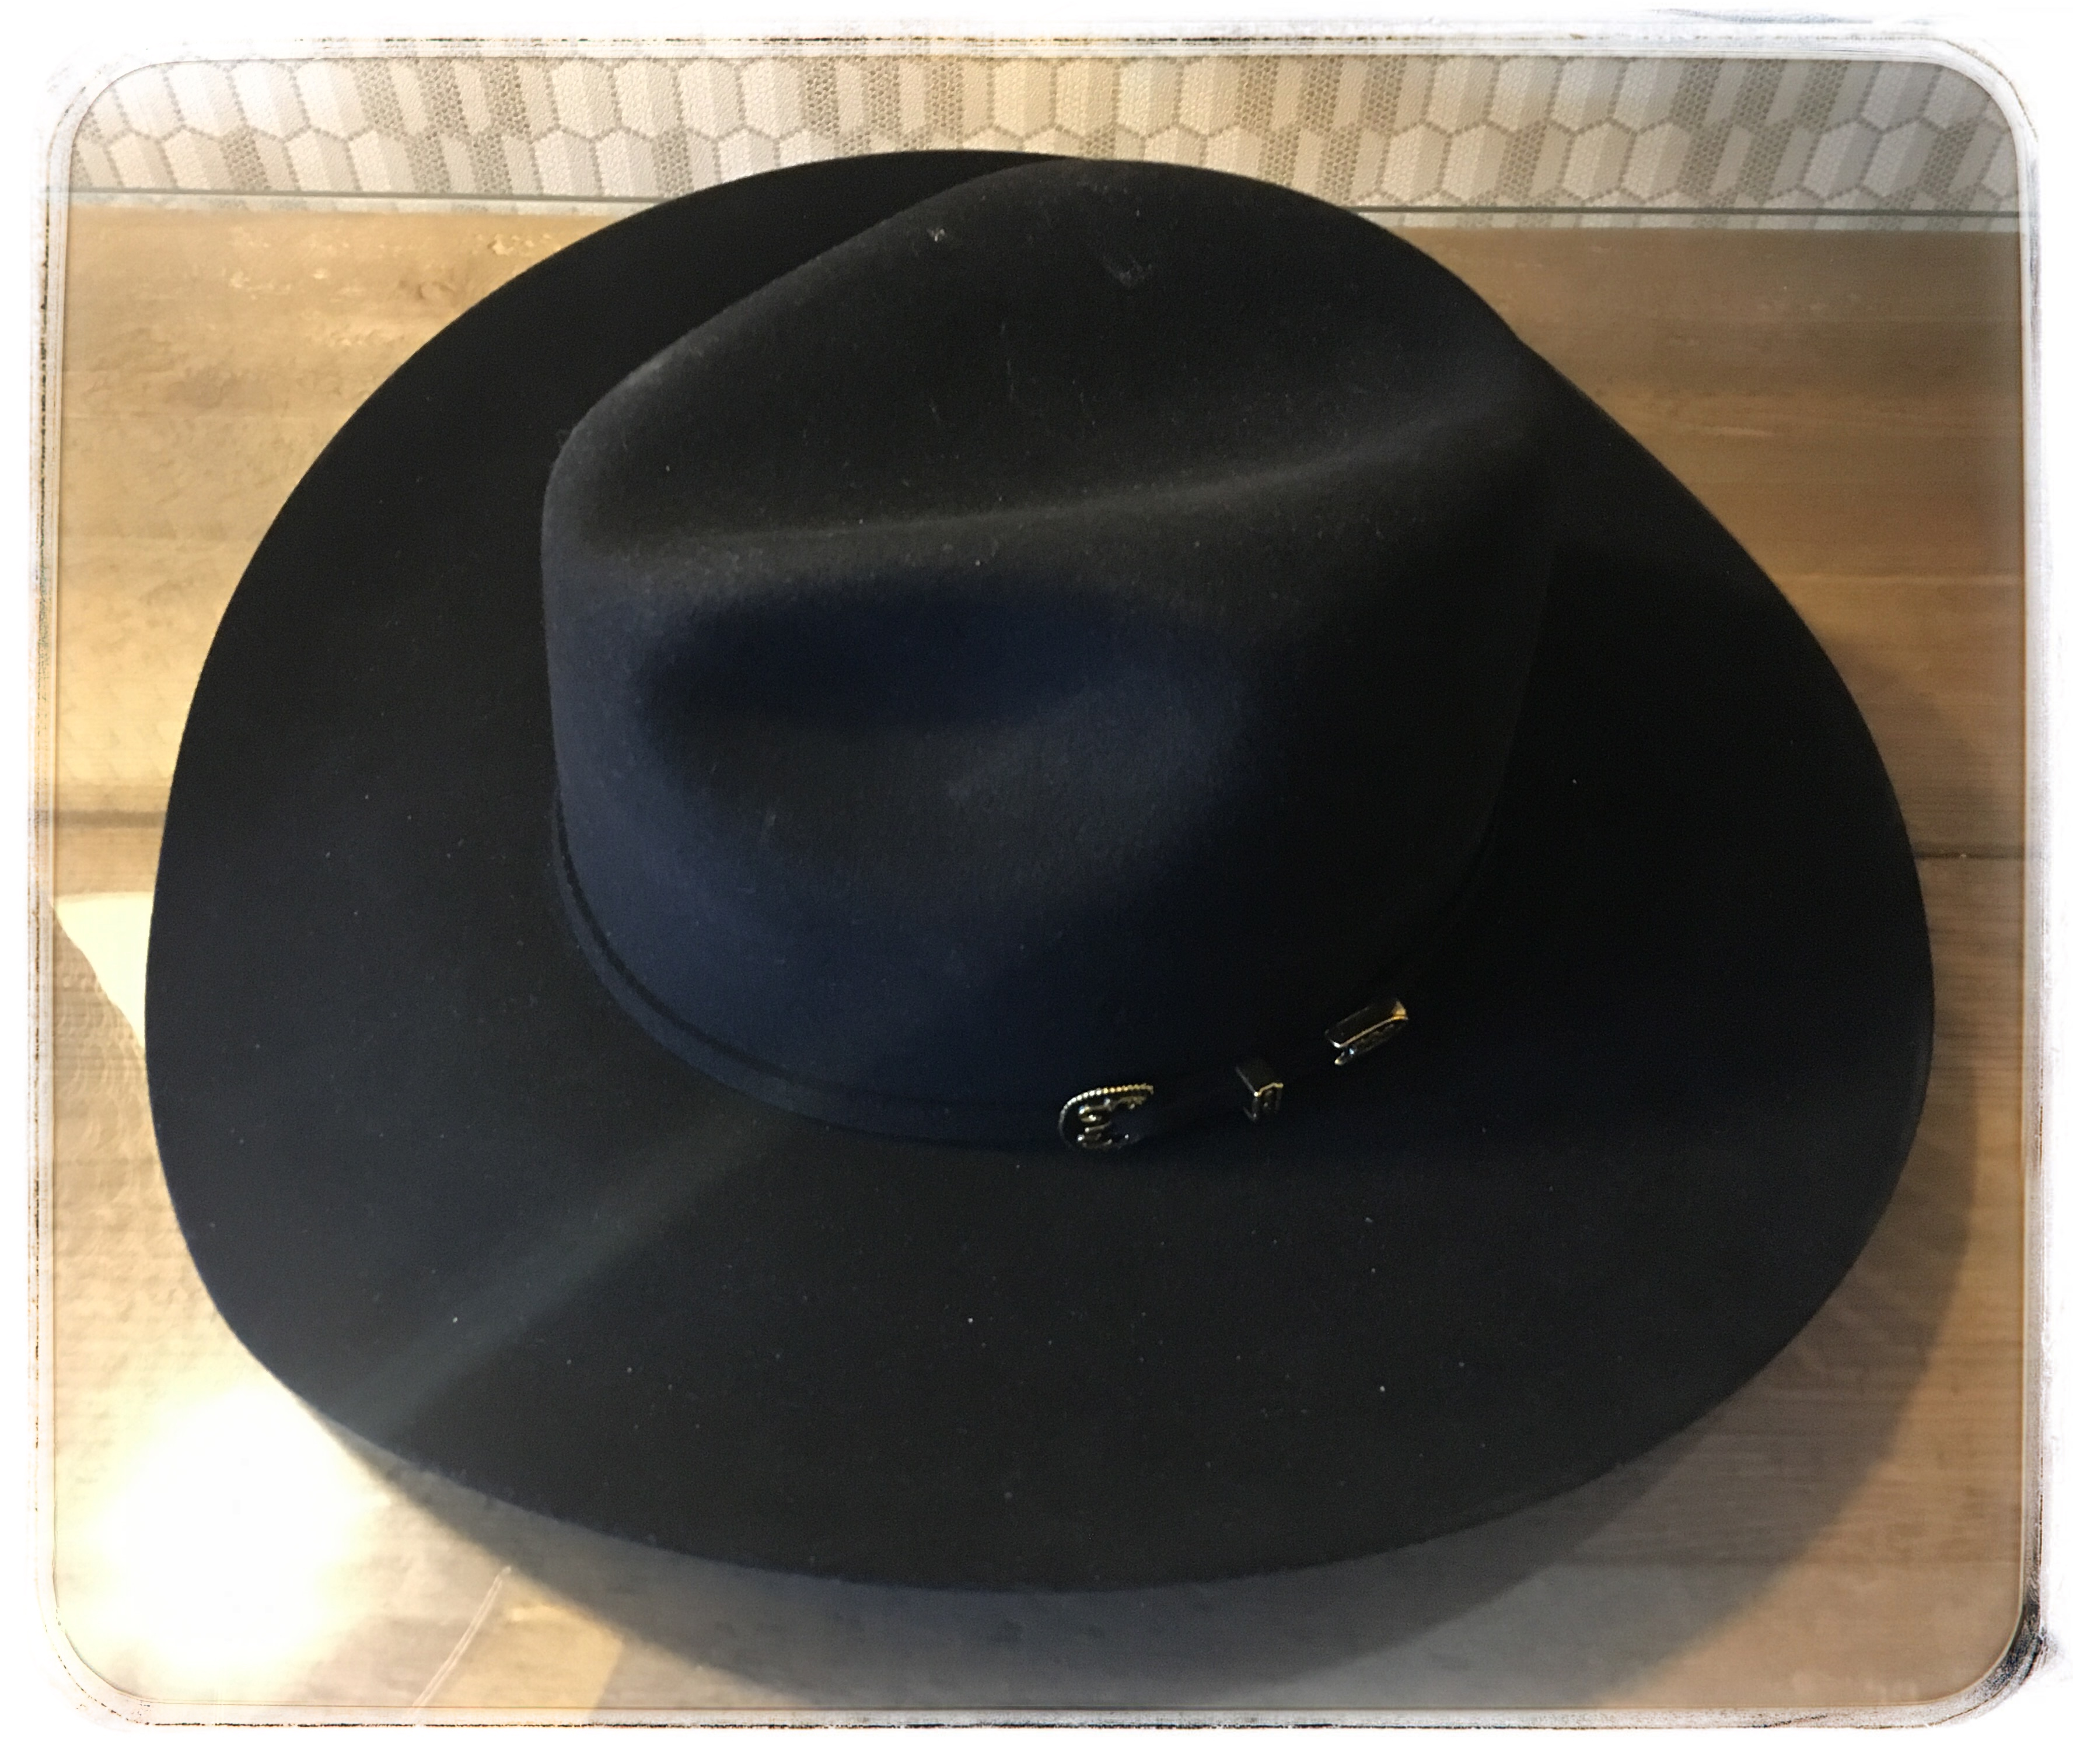 westworld sdcc black hat